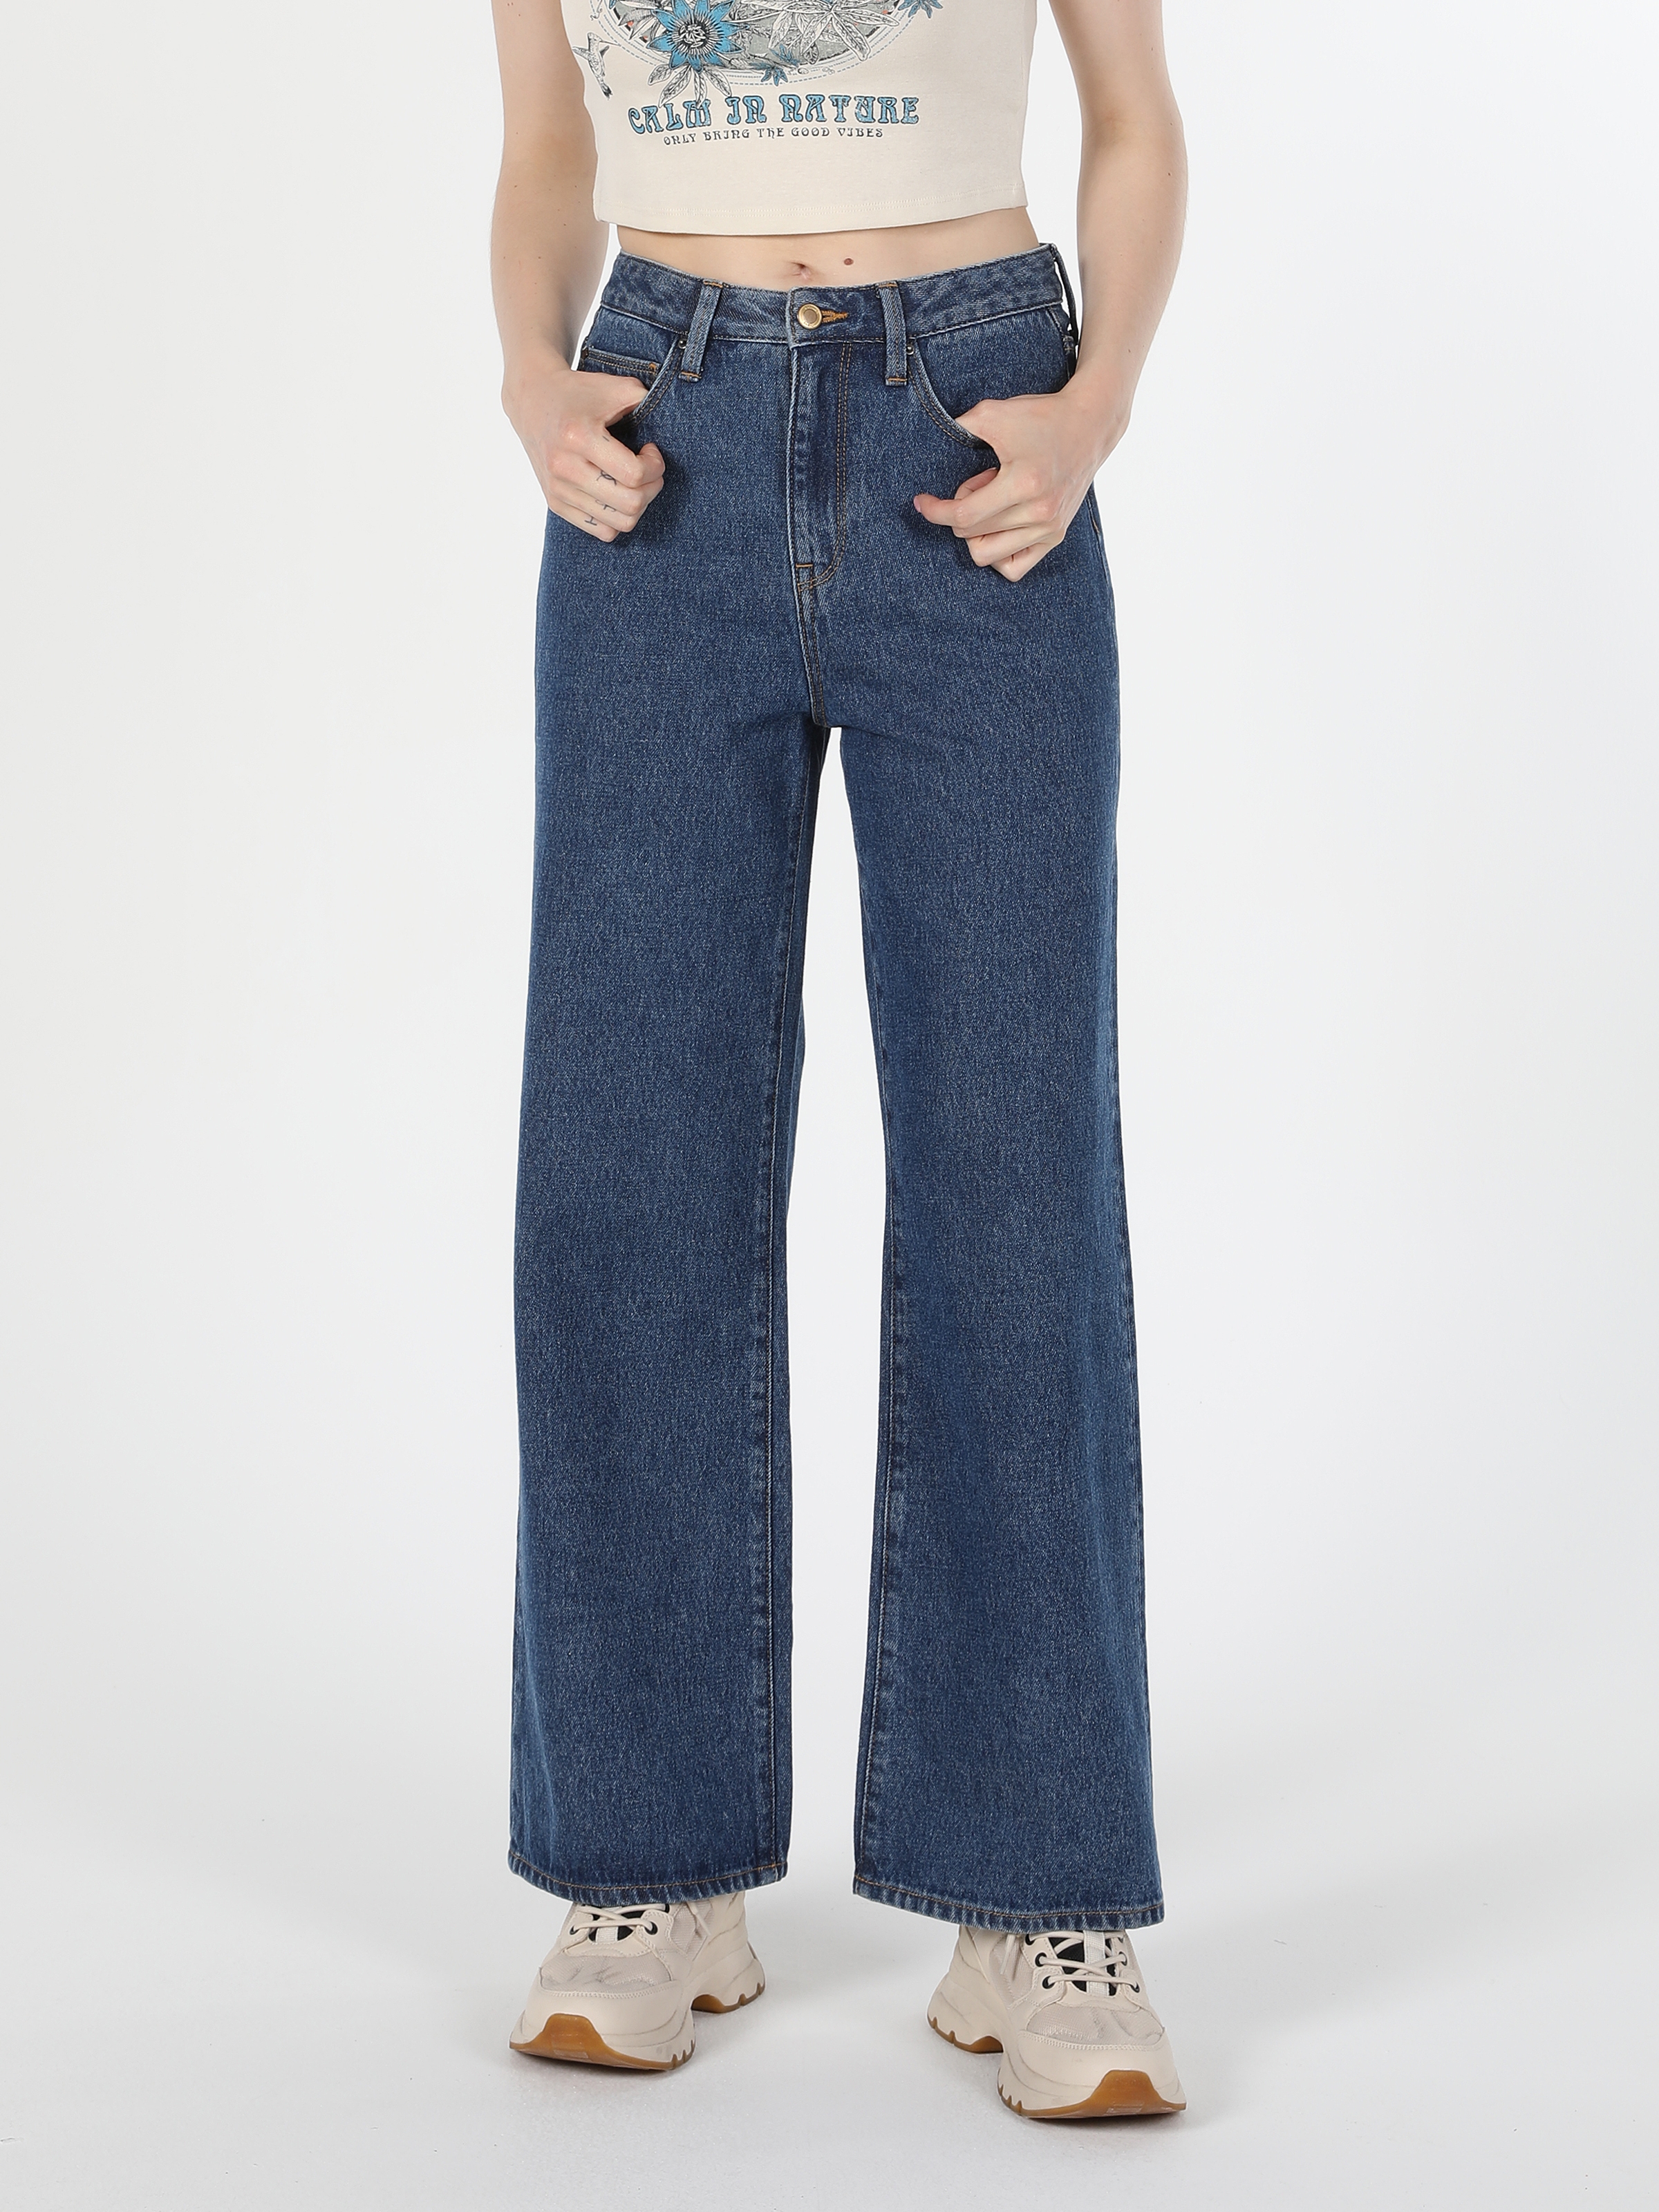 Afficher les détails de Pantalon En Jean Bleu Taille Haute Pour Femme, Coupe Régulière, Jambe Large, 970 Berry